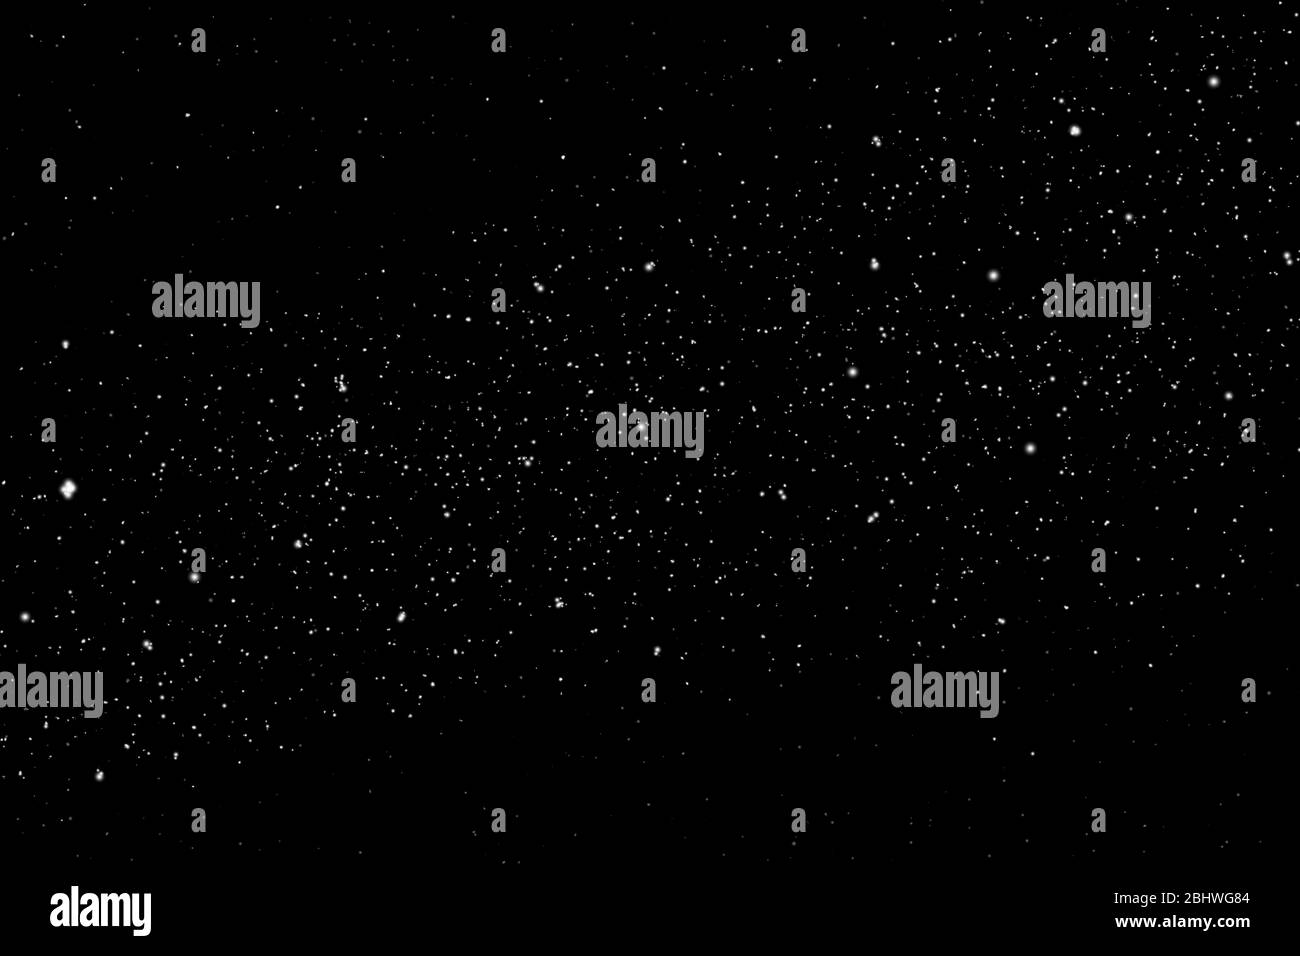 Mouvement de gel de la poussière d'étoiles de poudre blanche isolée sur fond noir et sombre. Conception abstraite du Cloud en chute libre. Écran de veille du nuage de particules, papier peint Banque D'Images